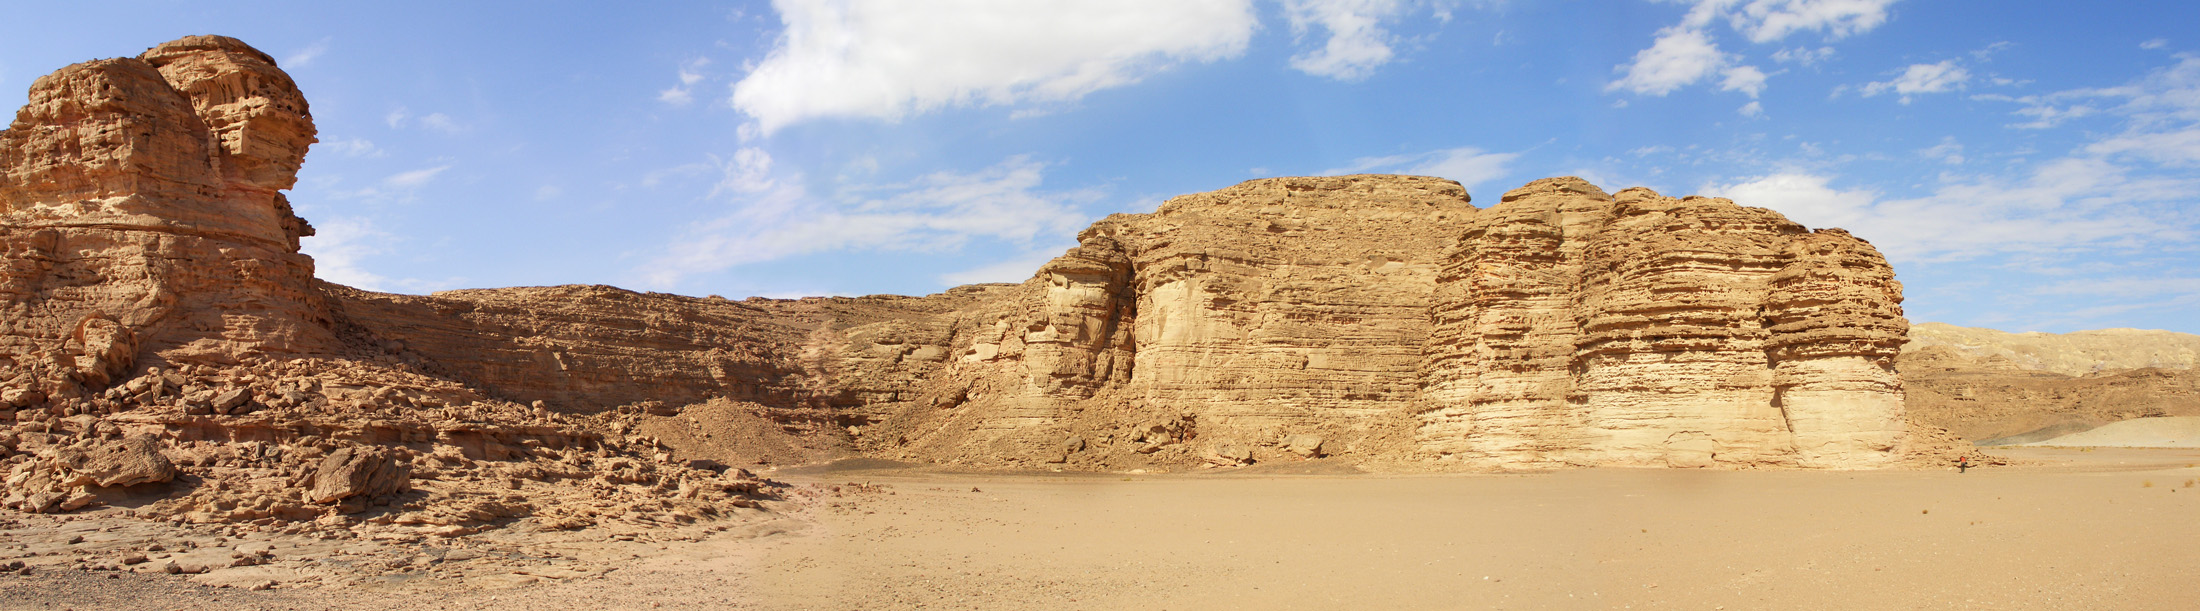 Панорама останцов в пустыне. Слева хорошо виден сфинкс.